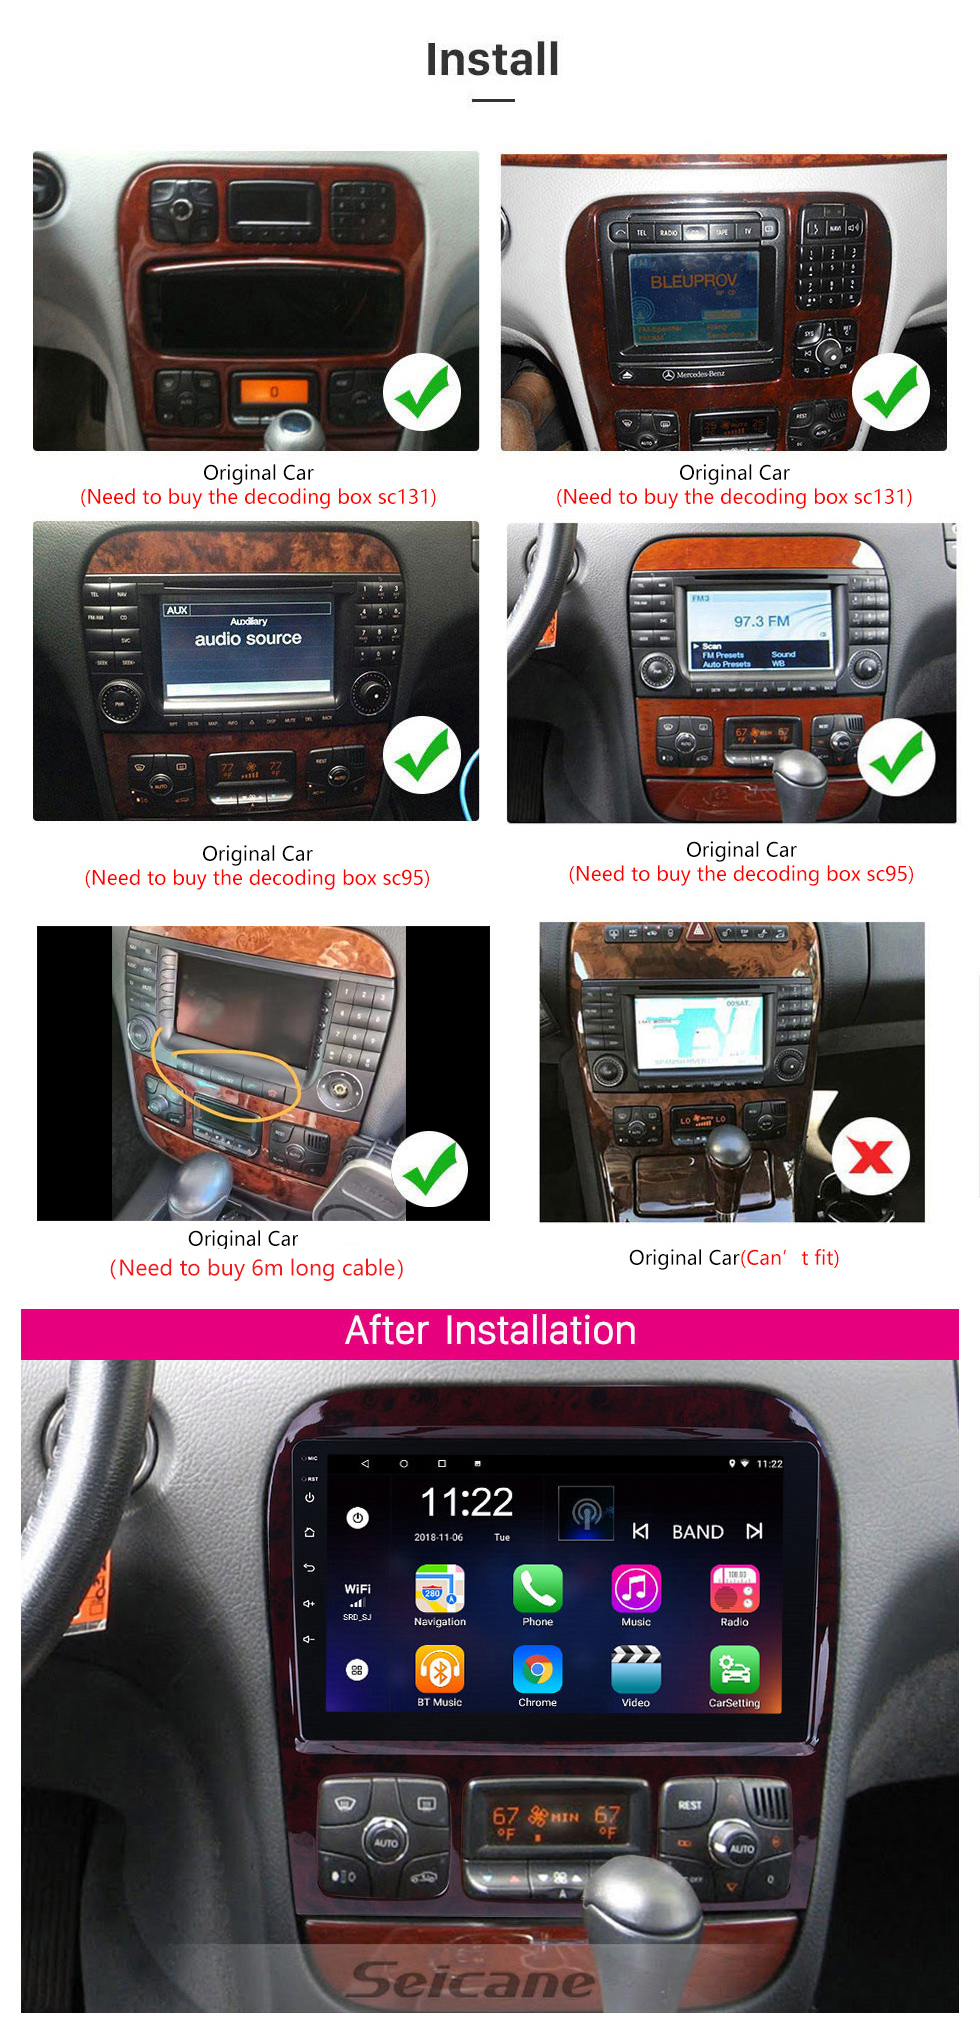 Seicane Tela sensível ao toque hd de 9 polegadas para 1998-2005 mercedes benz classe s w220/s280/s320/s320 cdi/s400 cdi/s350/s430/s500/s600/s55 amg/s63 amg/s65 amg rádio de carro bluetooth carro estéreo ssistema suporte imagem em Foto